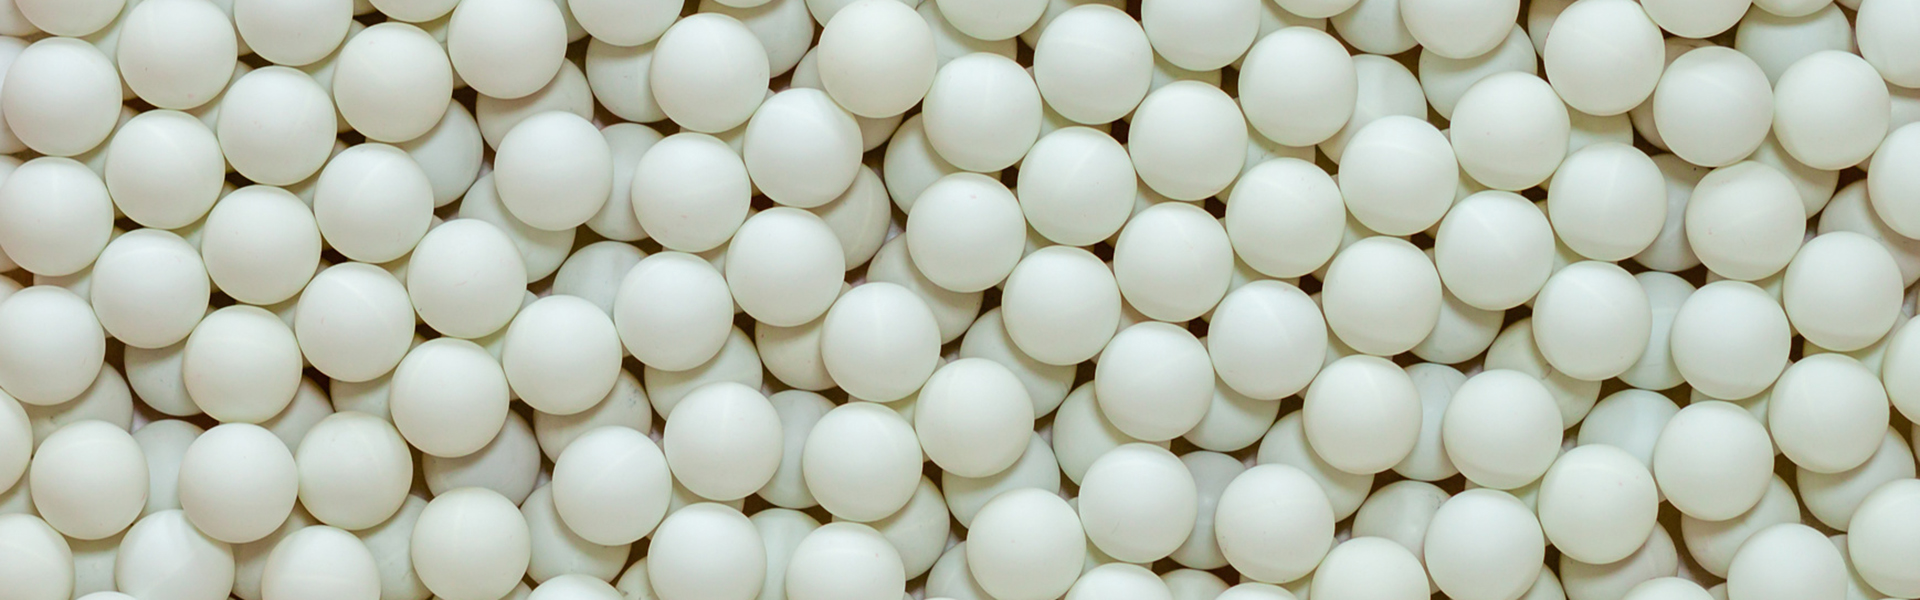 Viele weiße Tischtennisbälle